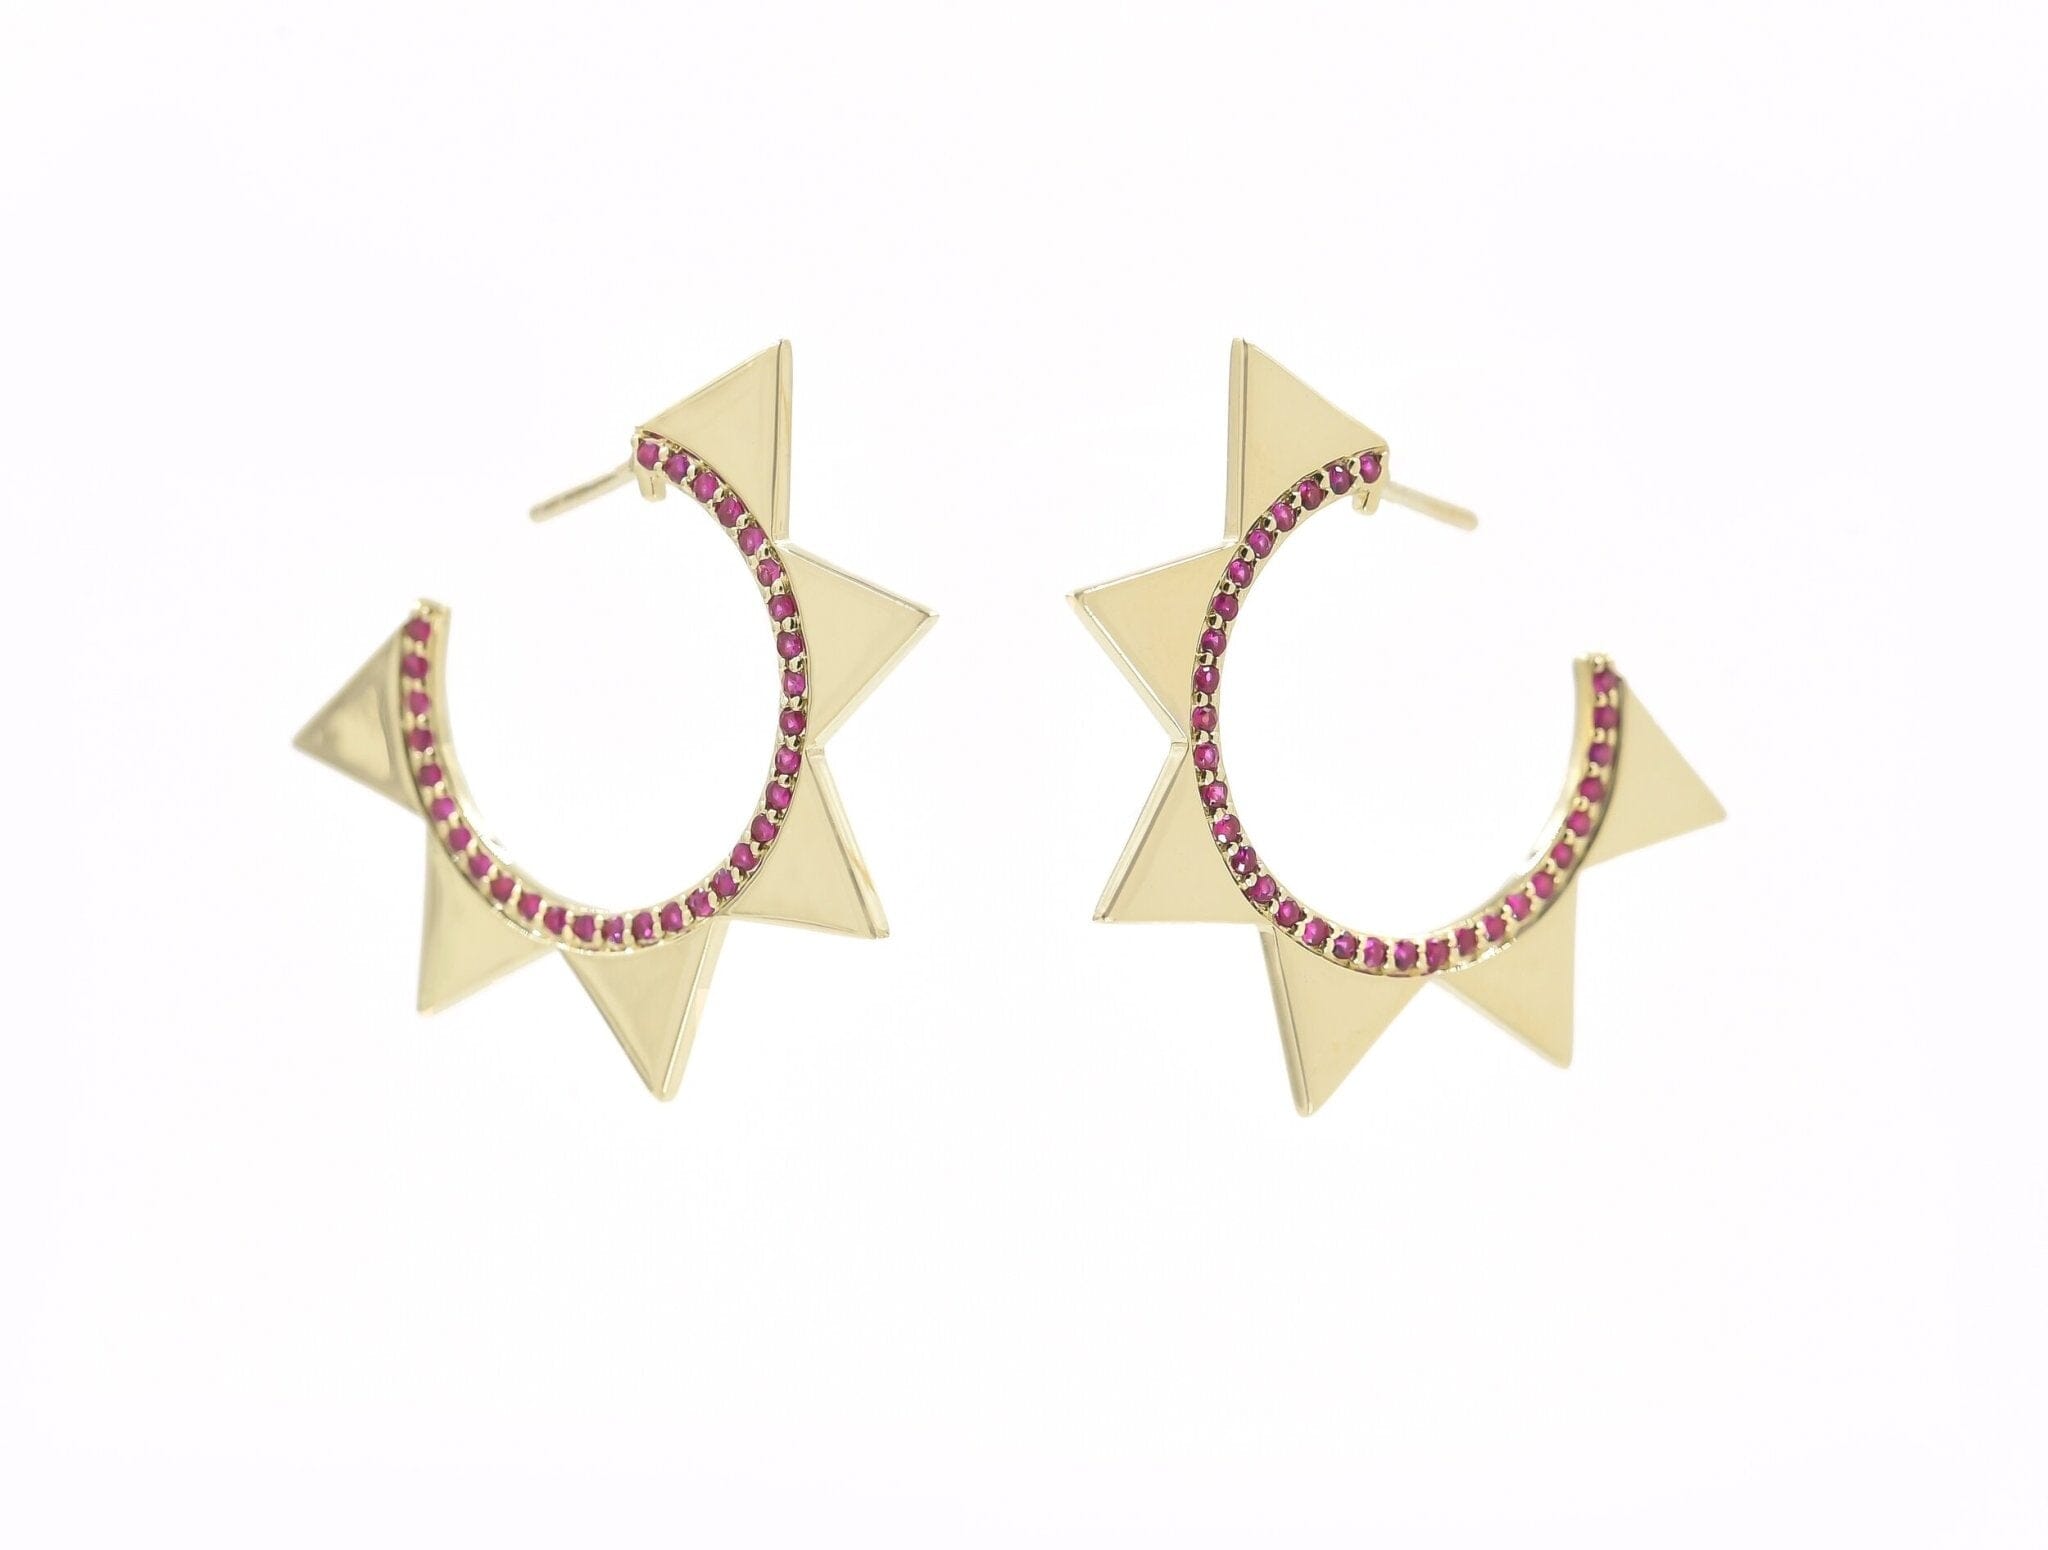 Venus Earrings Rubies Earrings - BONDEYE JEWELRY ®